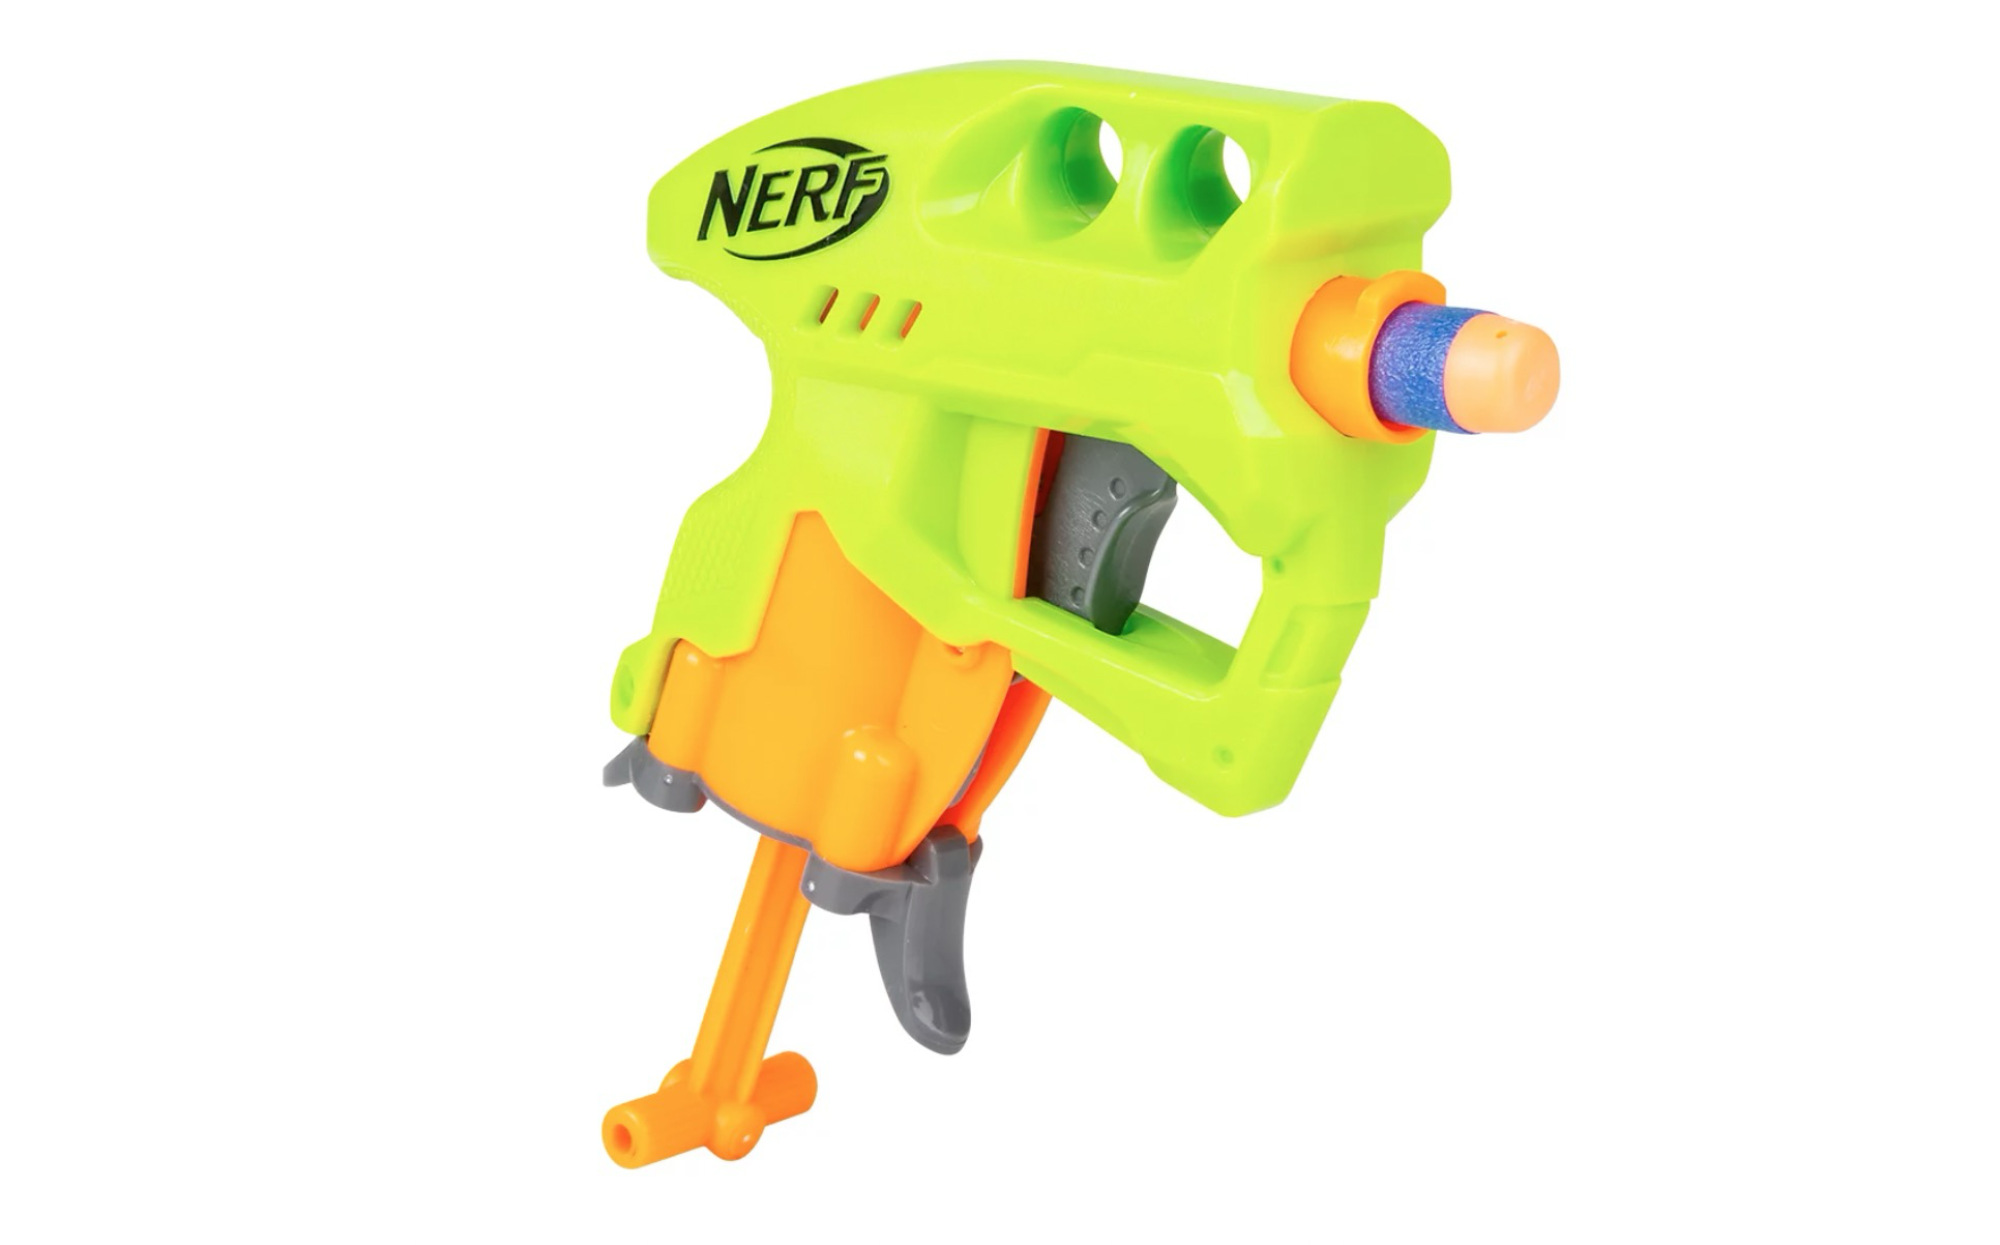 World's First Ever Nerf Gun, NerfGunAttachments